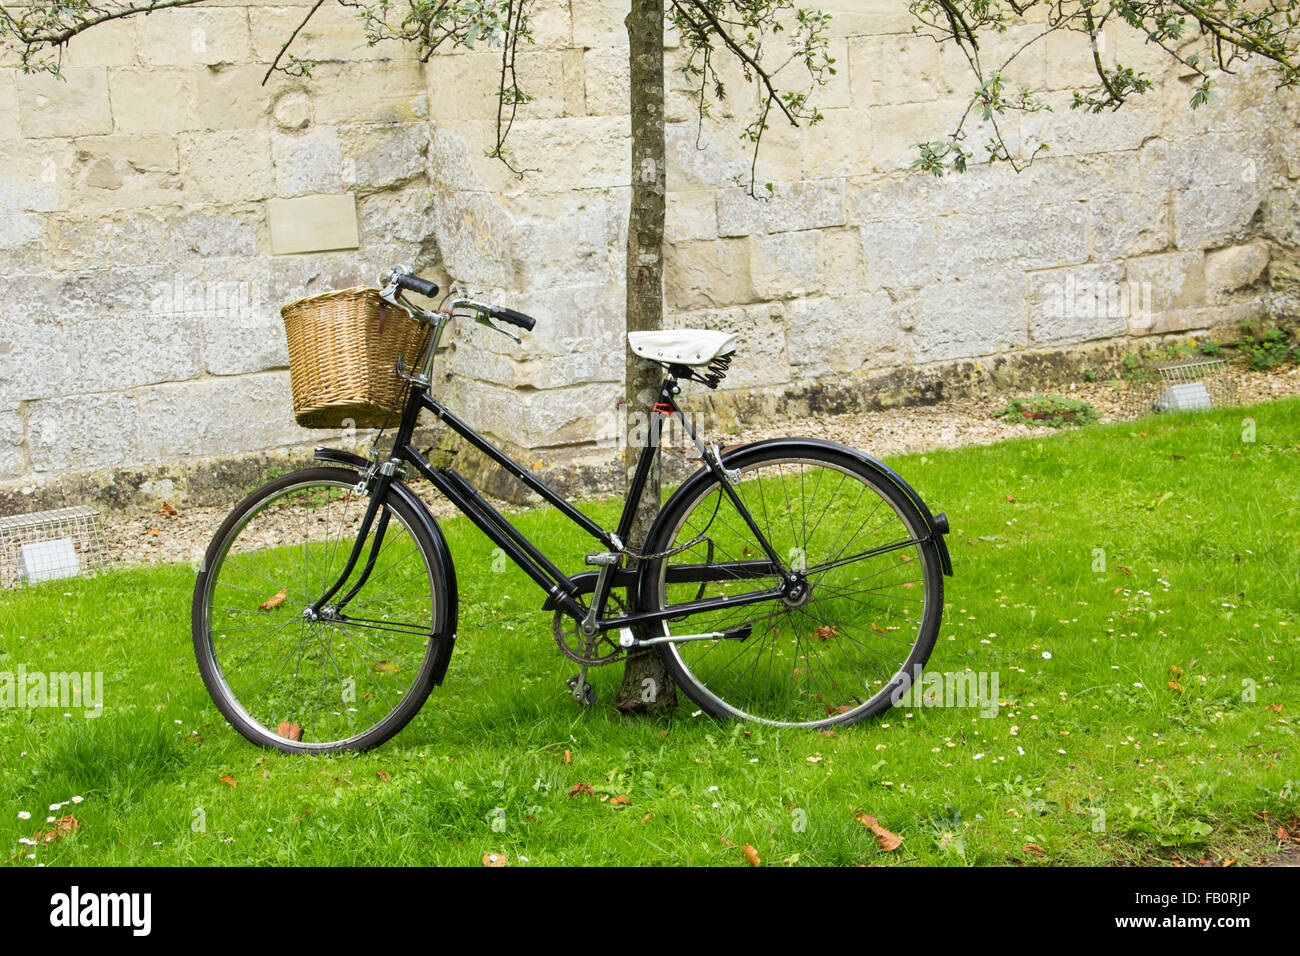 Onorevoli tradizionale bicicletta con cestello anteriore e cruiser tipo manubrio., incatenato in una sottile albero vicino alla cattedrale in Salisbur Foto Stock